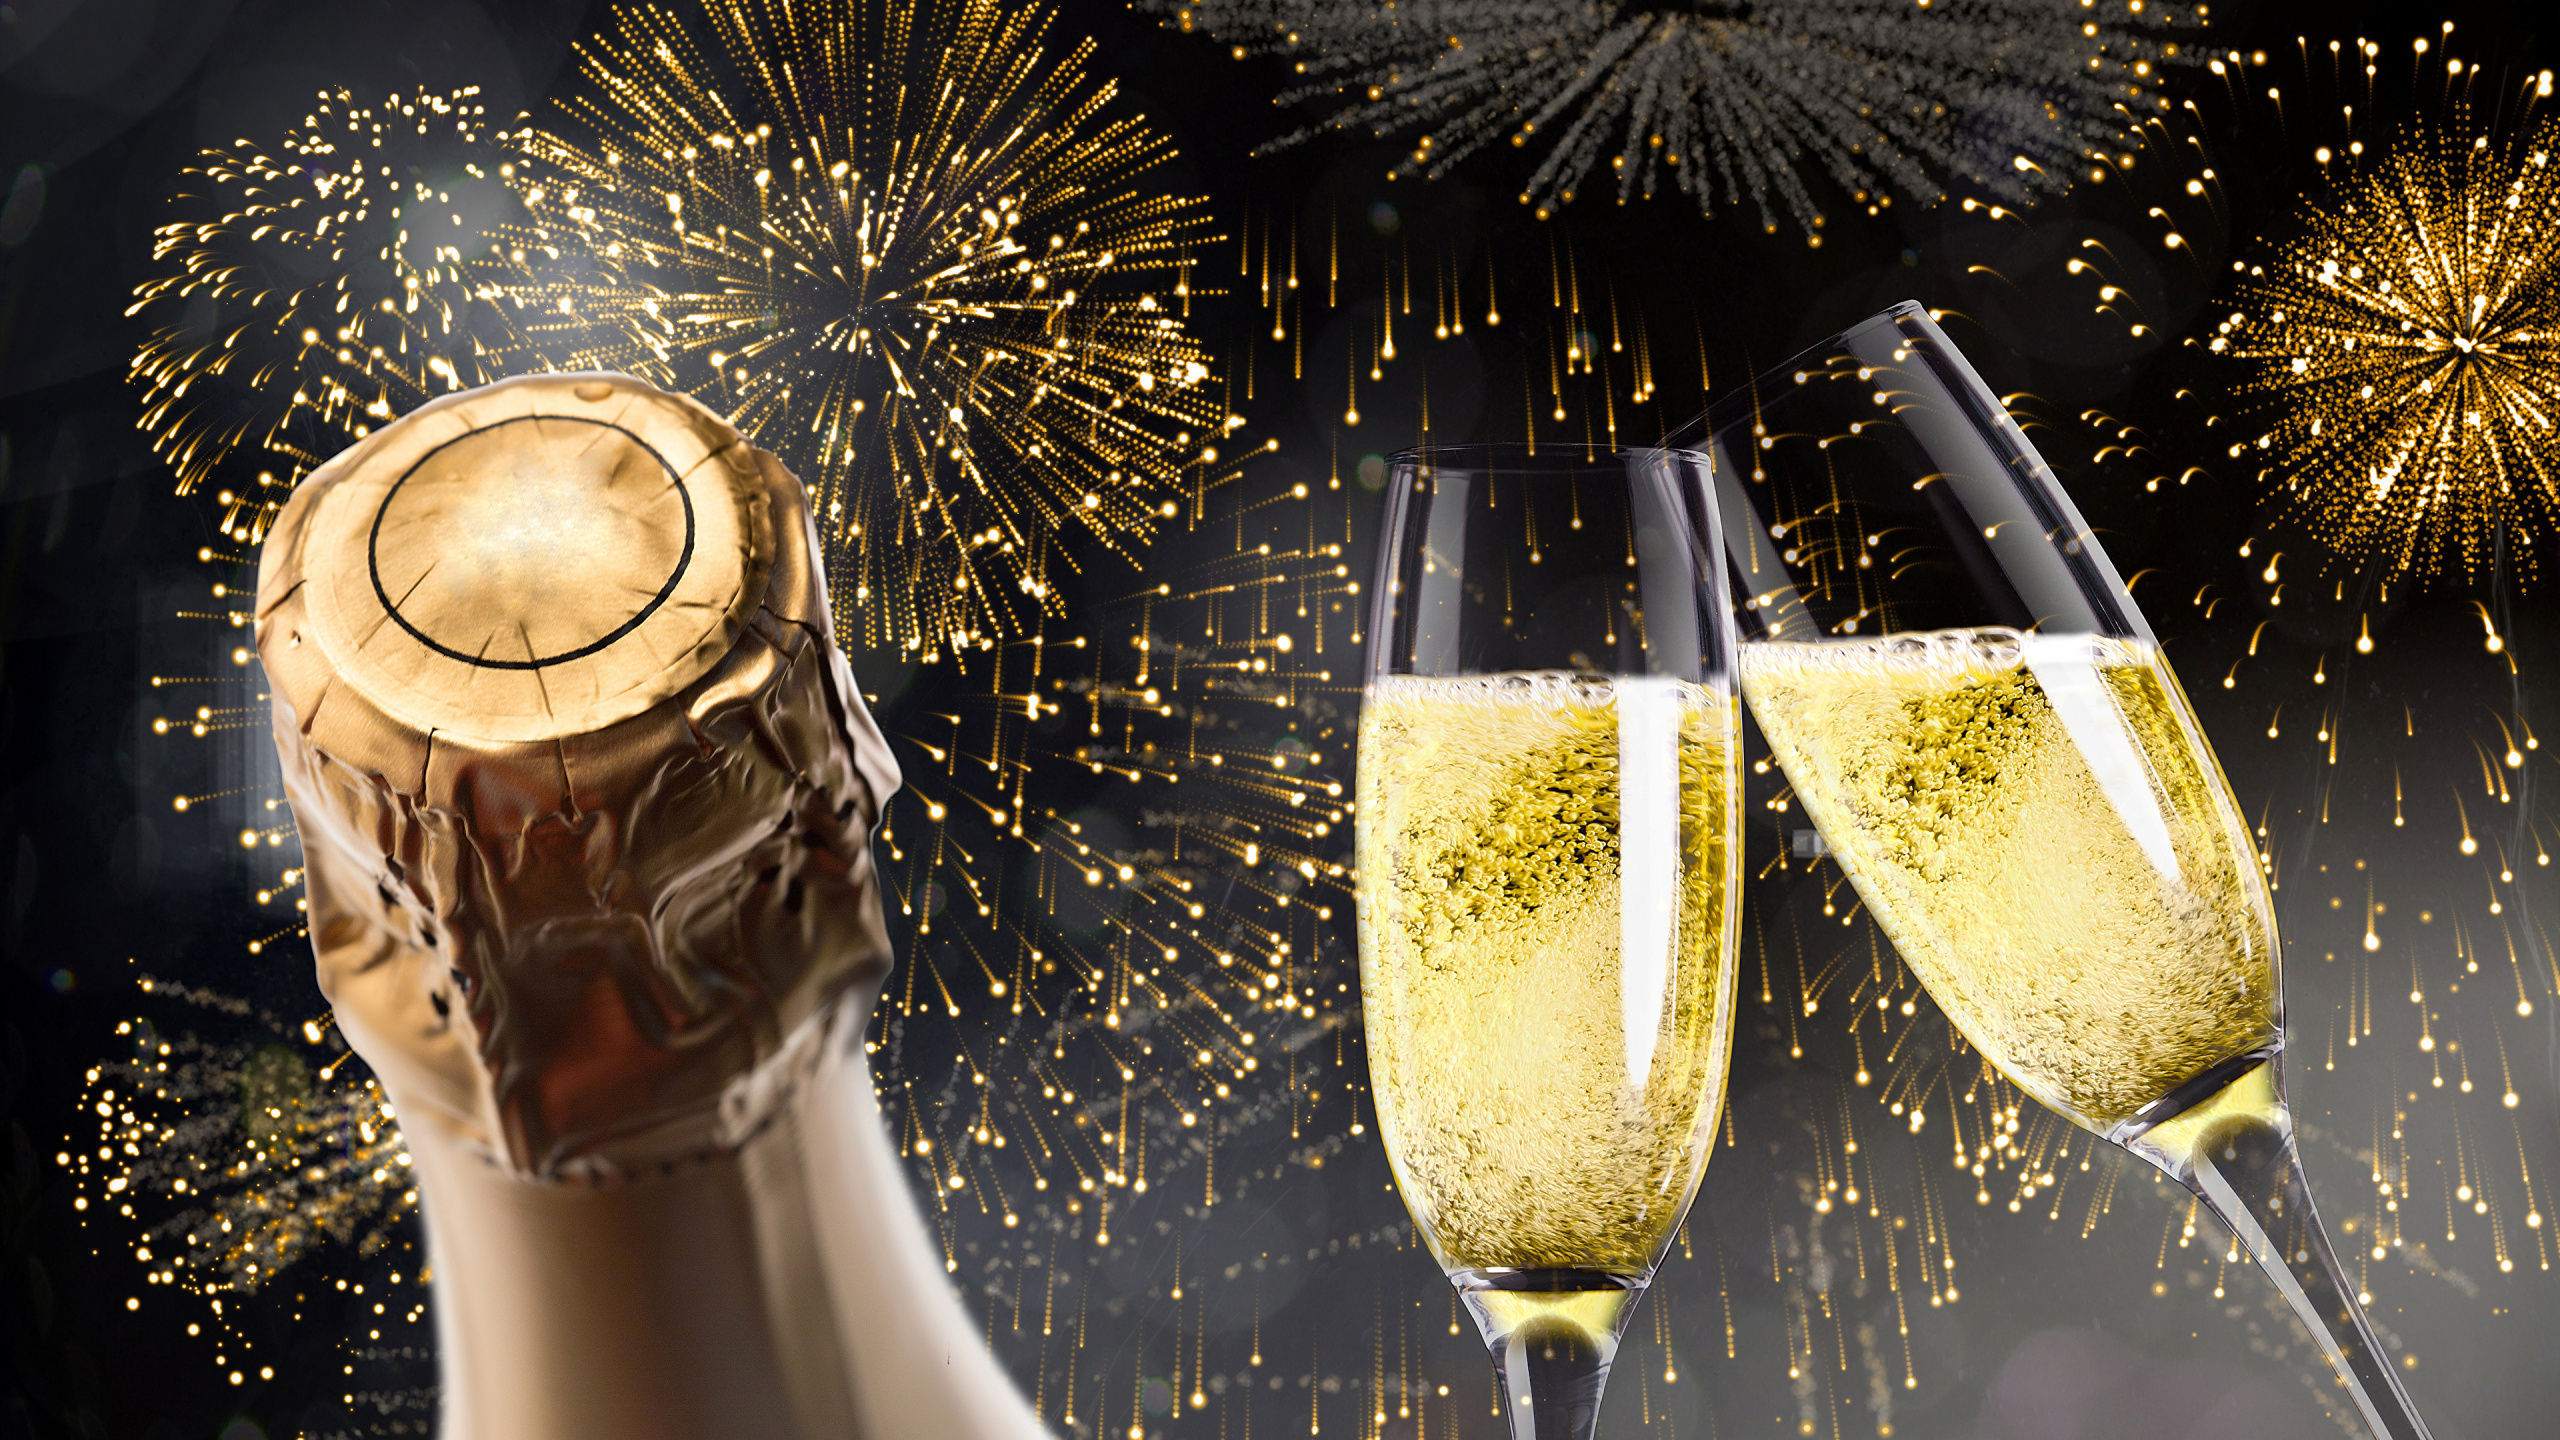 新年前夕, 香槟, 新的一年, 缔约方, 新年当天 壁纸 2560x1440 允许